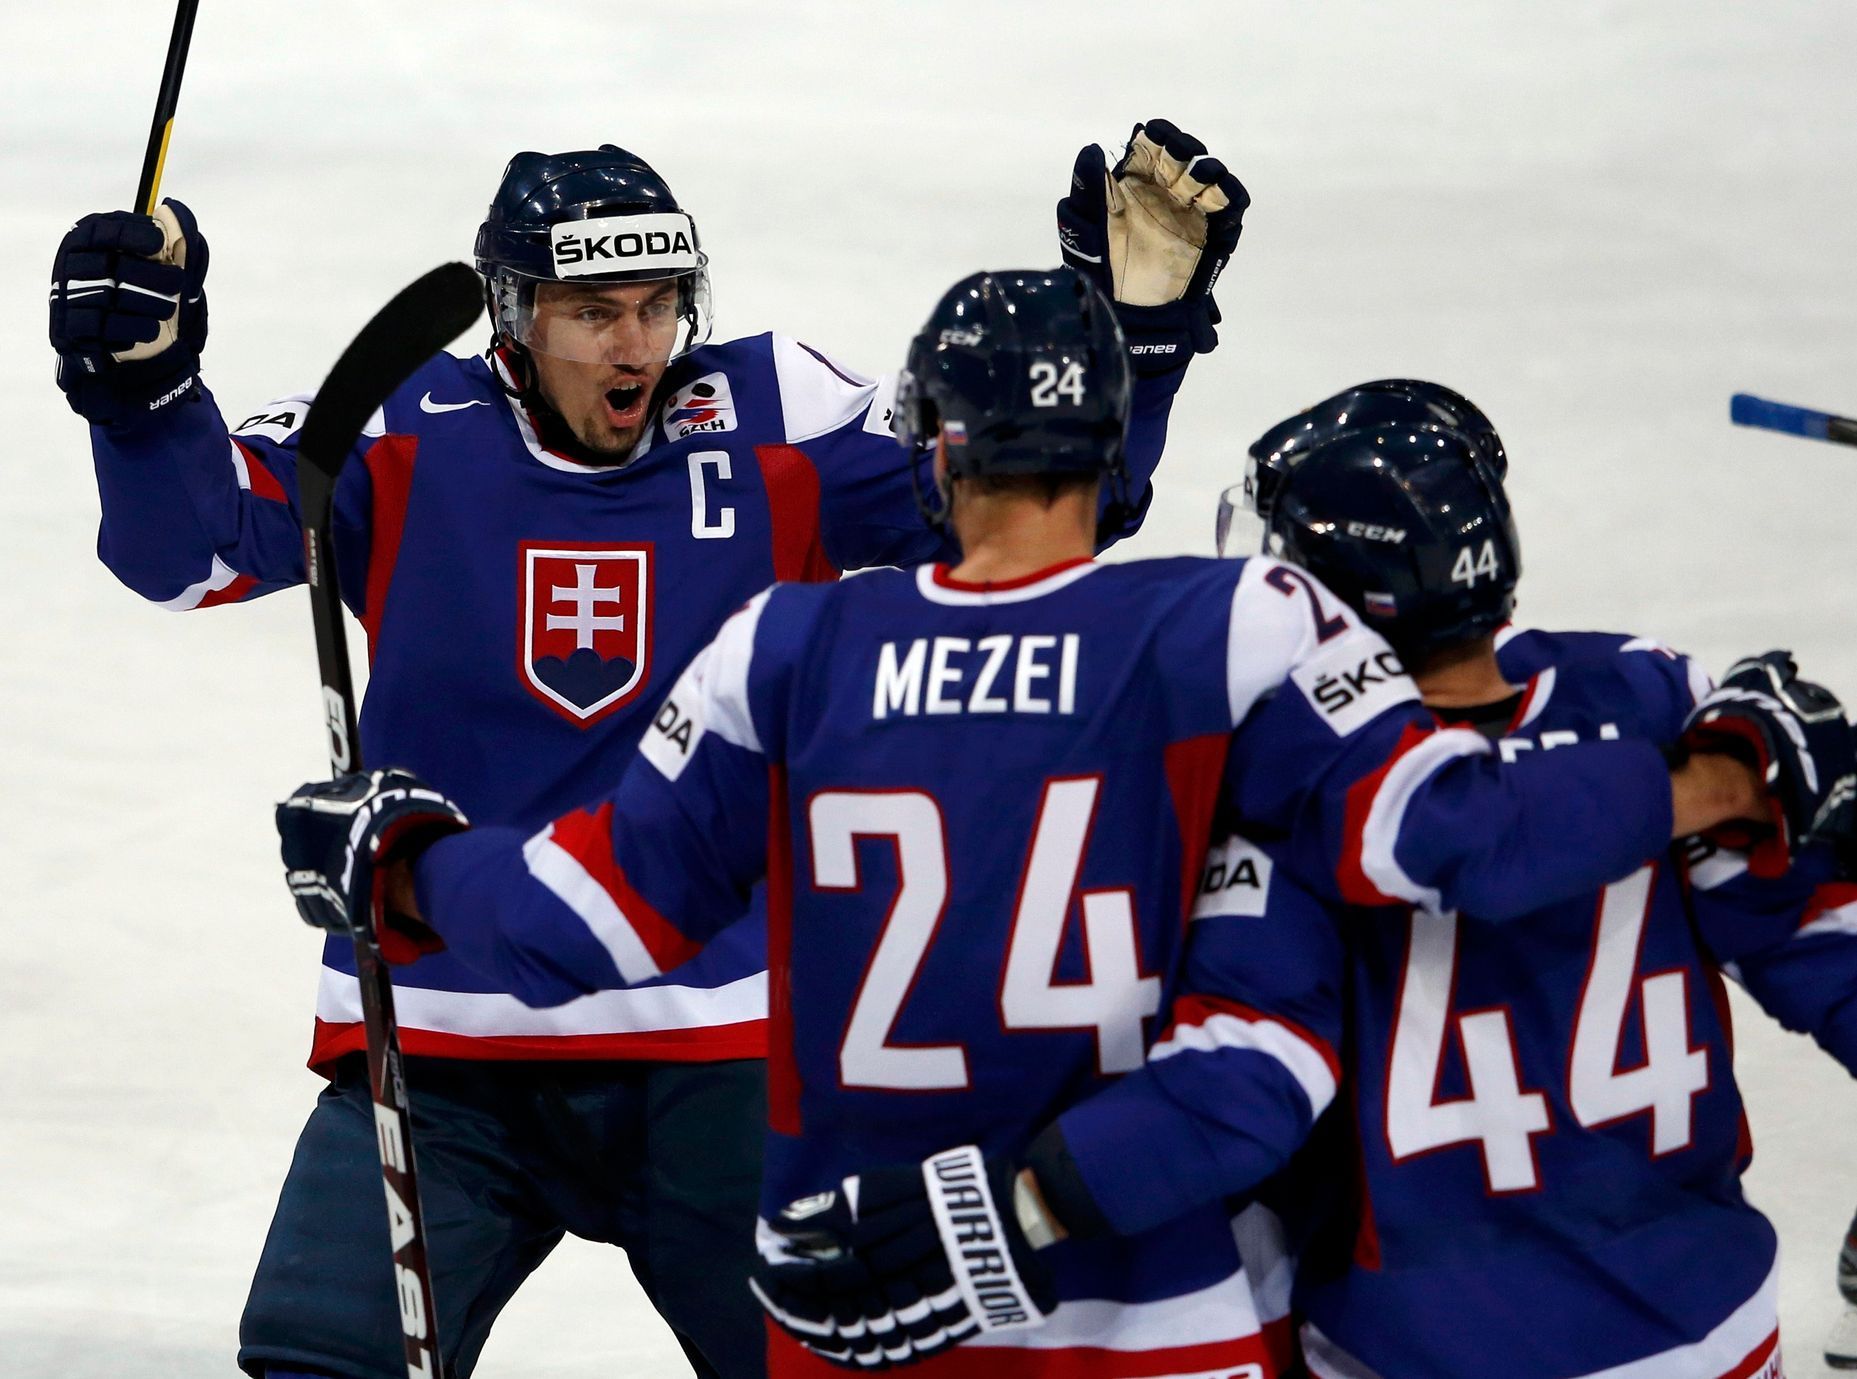 Hokej, MS 2013, Finsko - Slovensko: Miroslav Šatan (vlevo), Branislav Mezei a  Peter Ölvecký slaví gól na 2:3